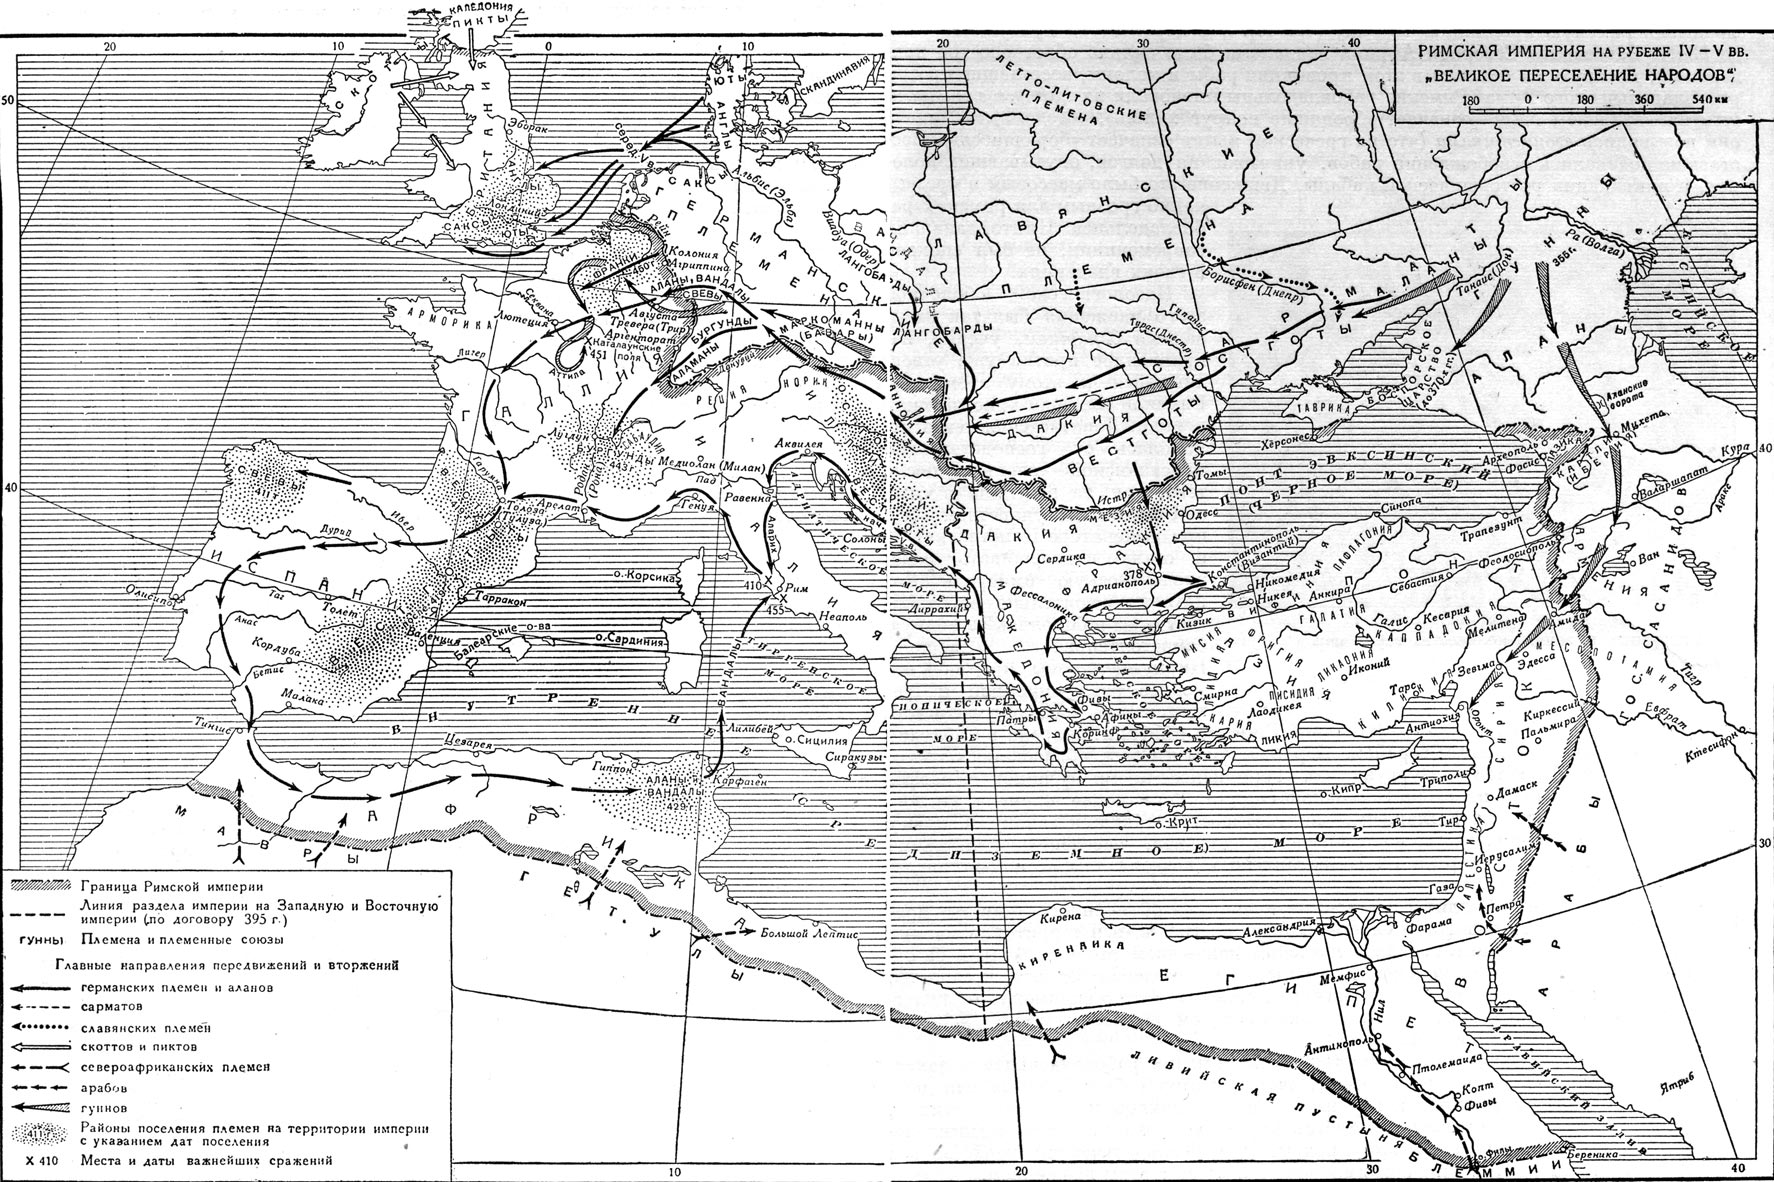 Римская империя на рубеже IV-V вв. 'Великое переселение народов'